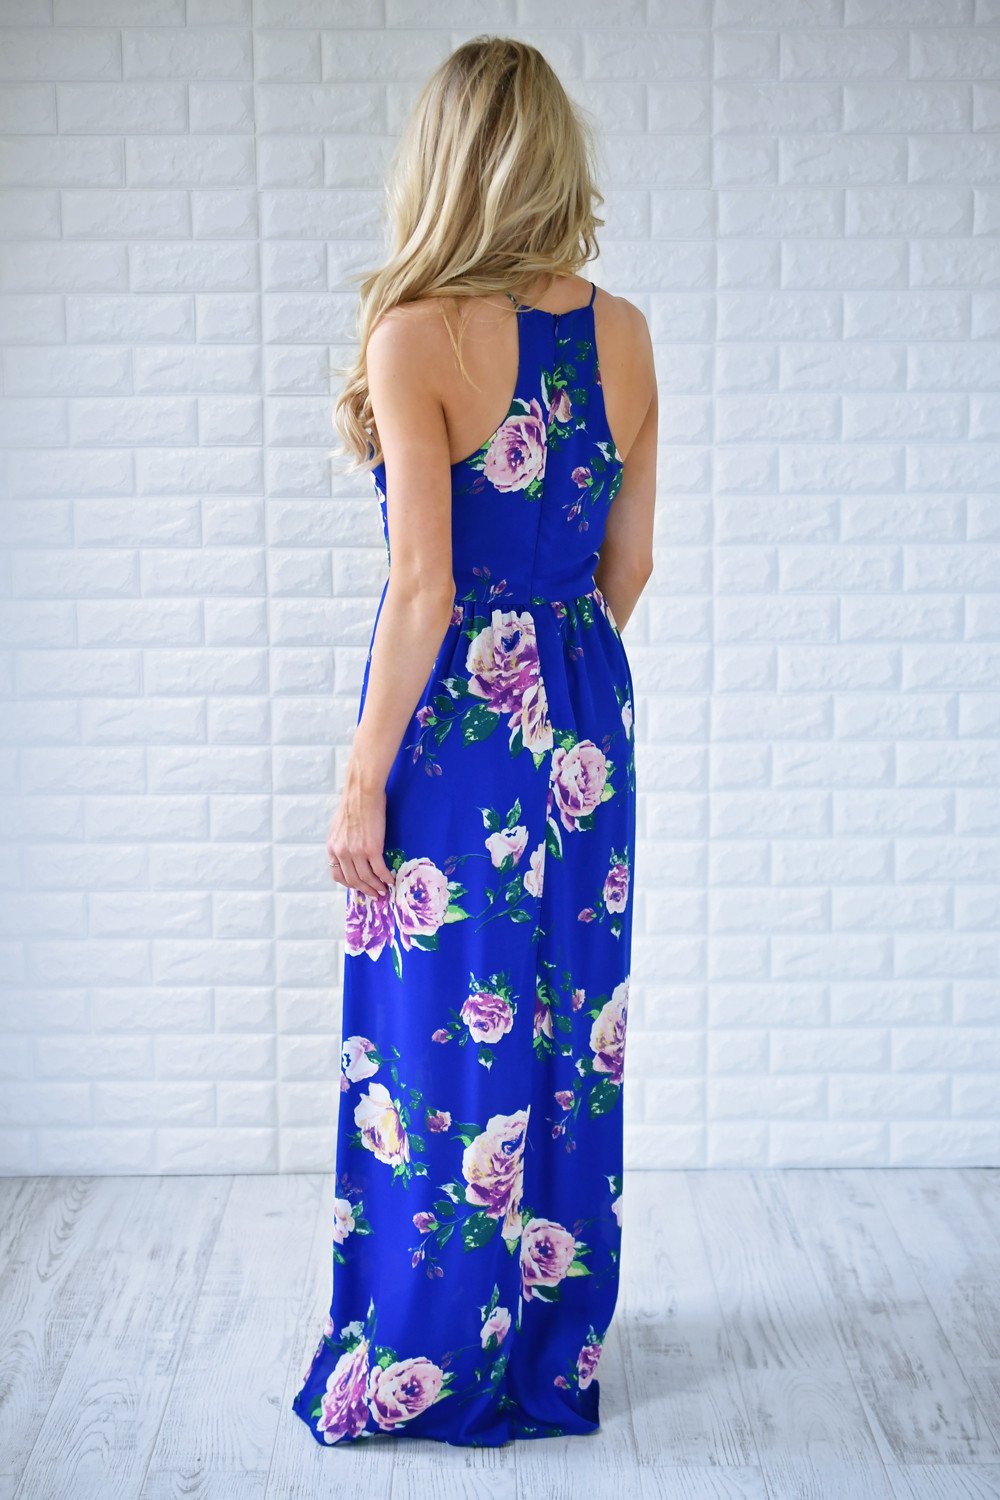 Electric Blue Floral Maxi Dress – The Pulse Boutique